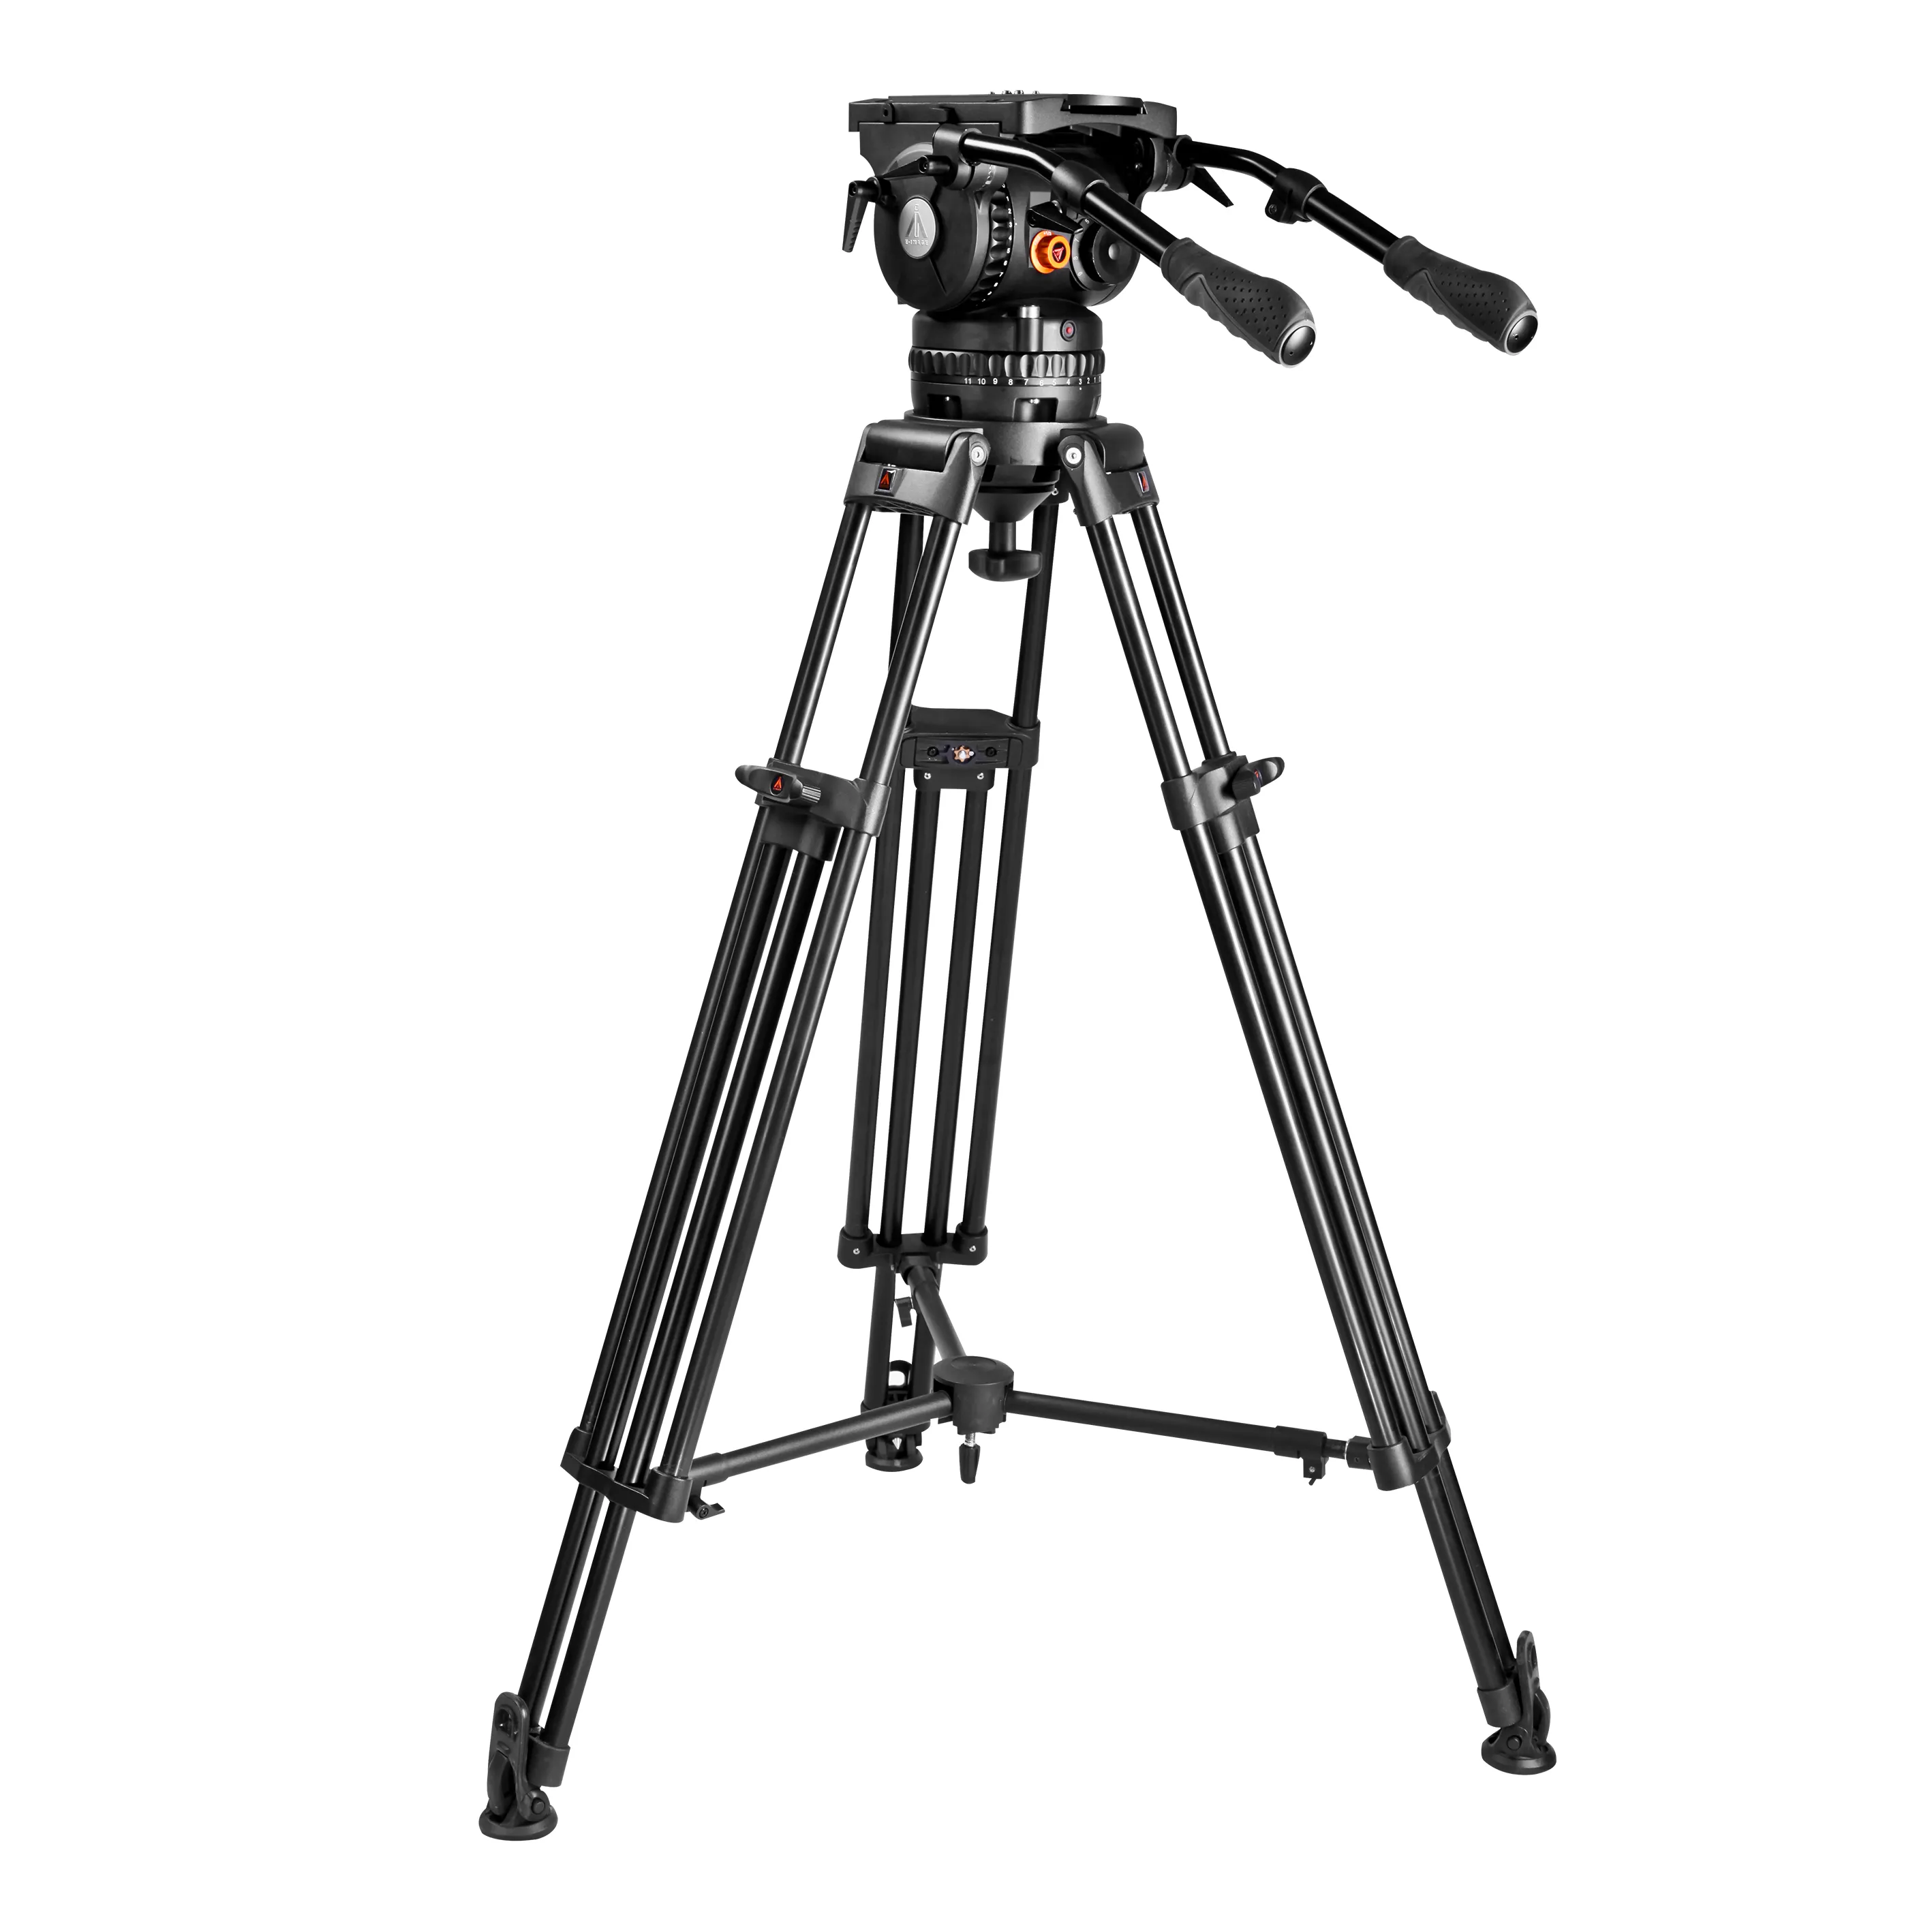 E-IMAGE EG40 плюс видеокамеры 150 мм плёнки штатив студийный фон для фотосъемки с оборудование для тяжелых условий эксплуатации